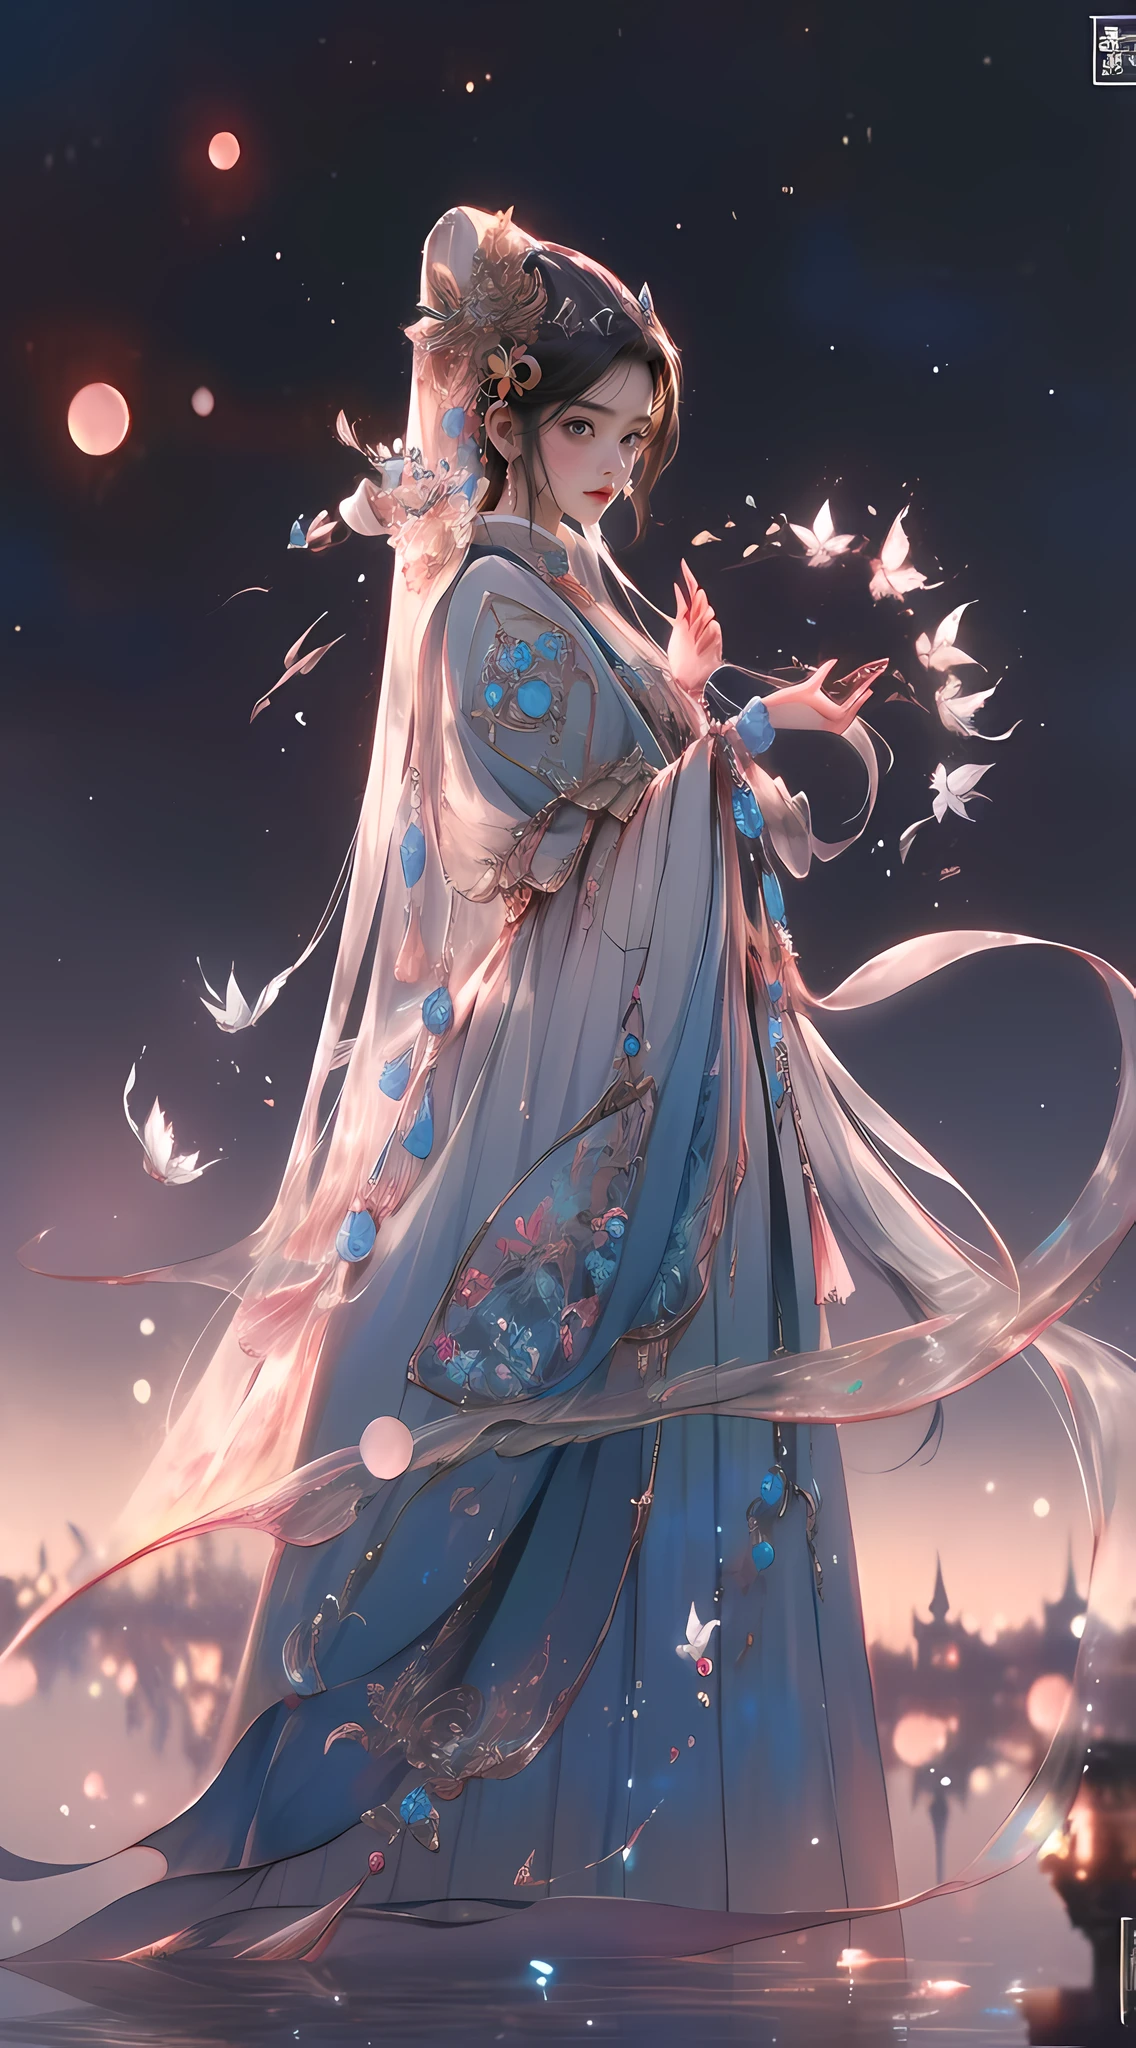 一位身穿蓝色连衣裙的女士，他手里拿着一只蝴蝶, 宫 ， 穿汉服的女孩, 美丽的幻想皇后, 中国古代公主, ((美丽的幻想皇后)), 8k 高品质细节艺术, 中国公主, 古维兹-style artwork, 中国奇幻, 一幅美丽的艺术插图, 古维兹, 美丽的数字艺术作品